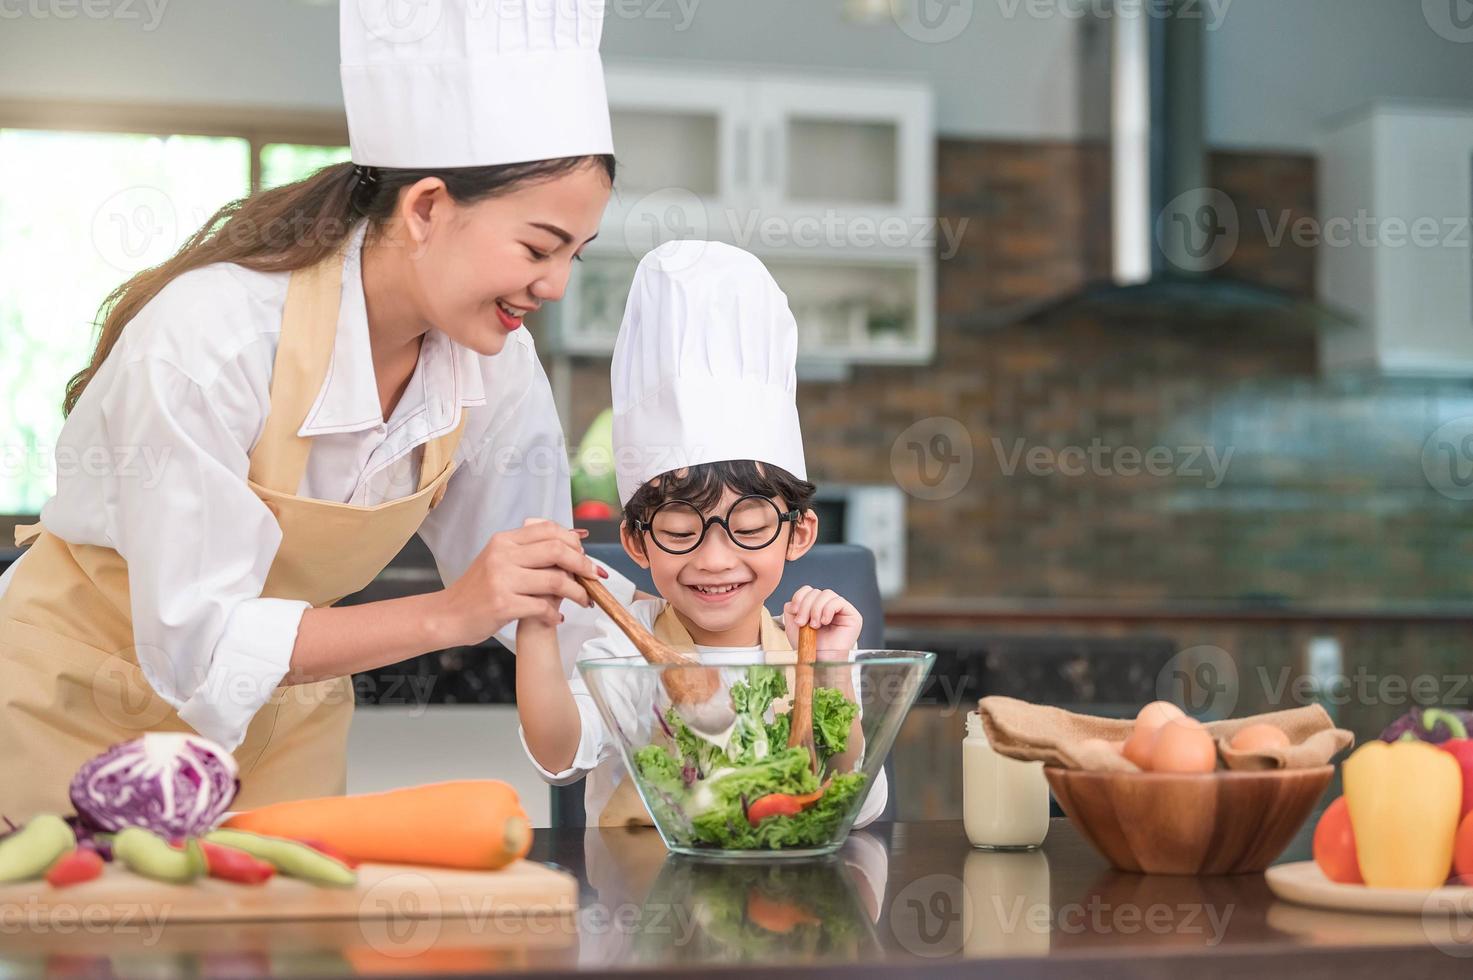 feliz linda mulher asiática e menino bonitinho com óculos, prepare-se para cozinhar na cozinha em casa. pessoas estilos de vida e família. conceito de comida e ingredientes caseiros. vida de duas pessoas tailandesas foto